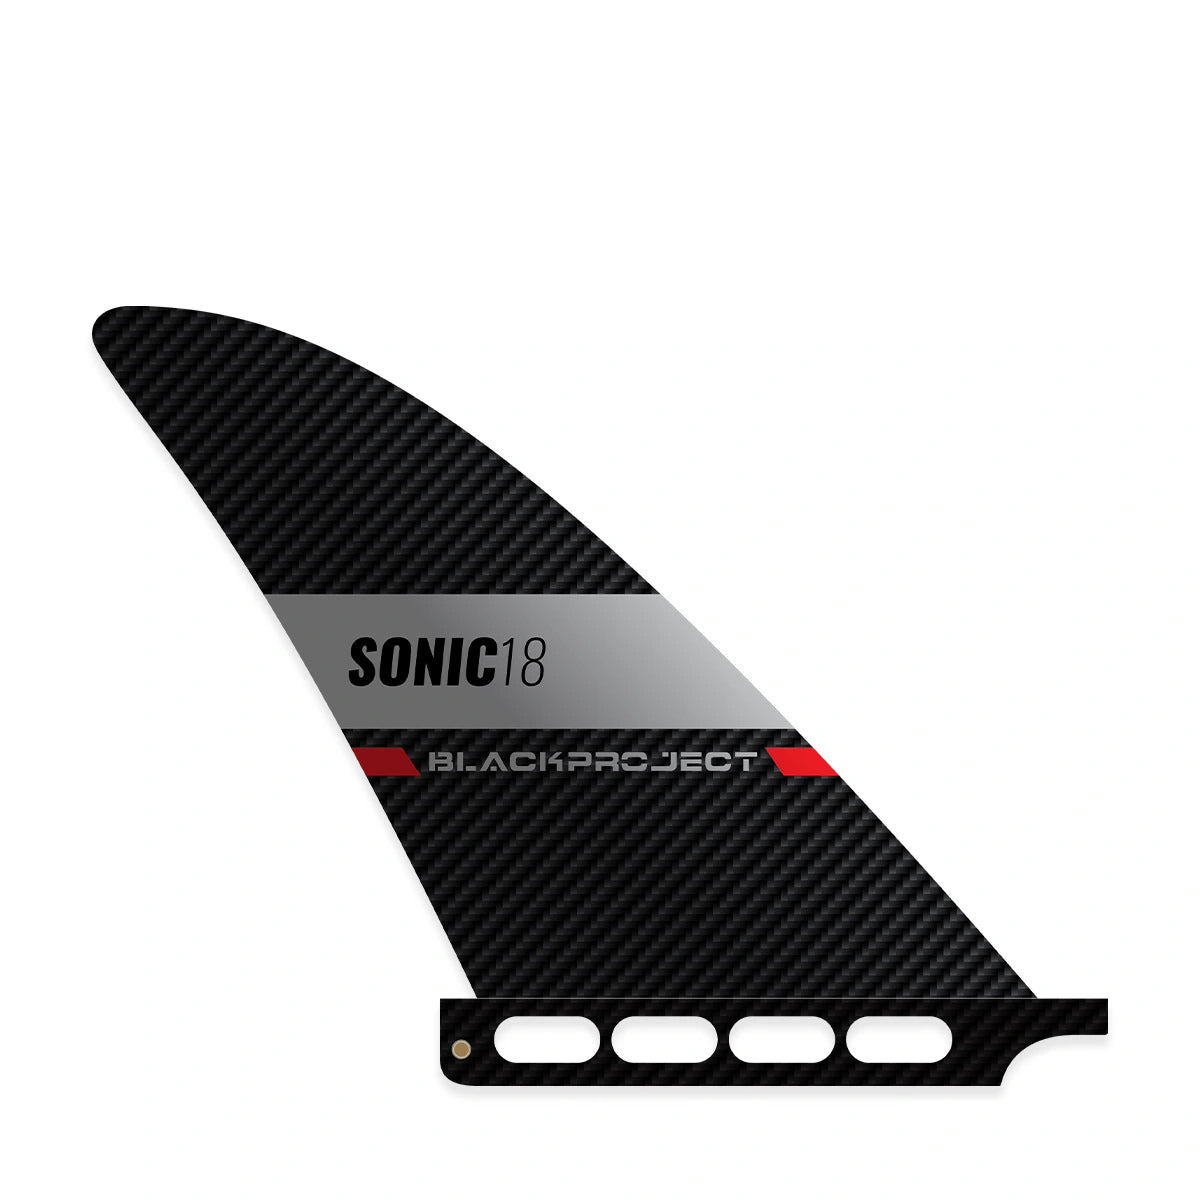 Rechte Seite der SUP Finne Black Project Sonic mit Surf Box Base.